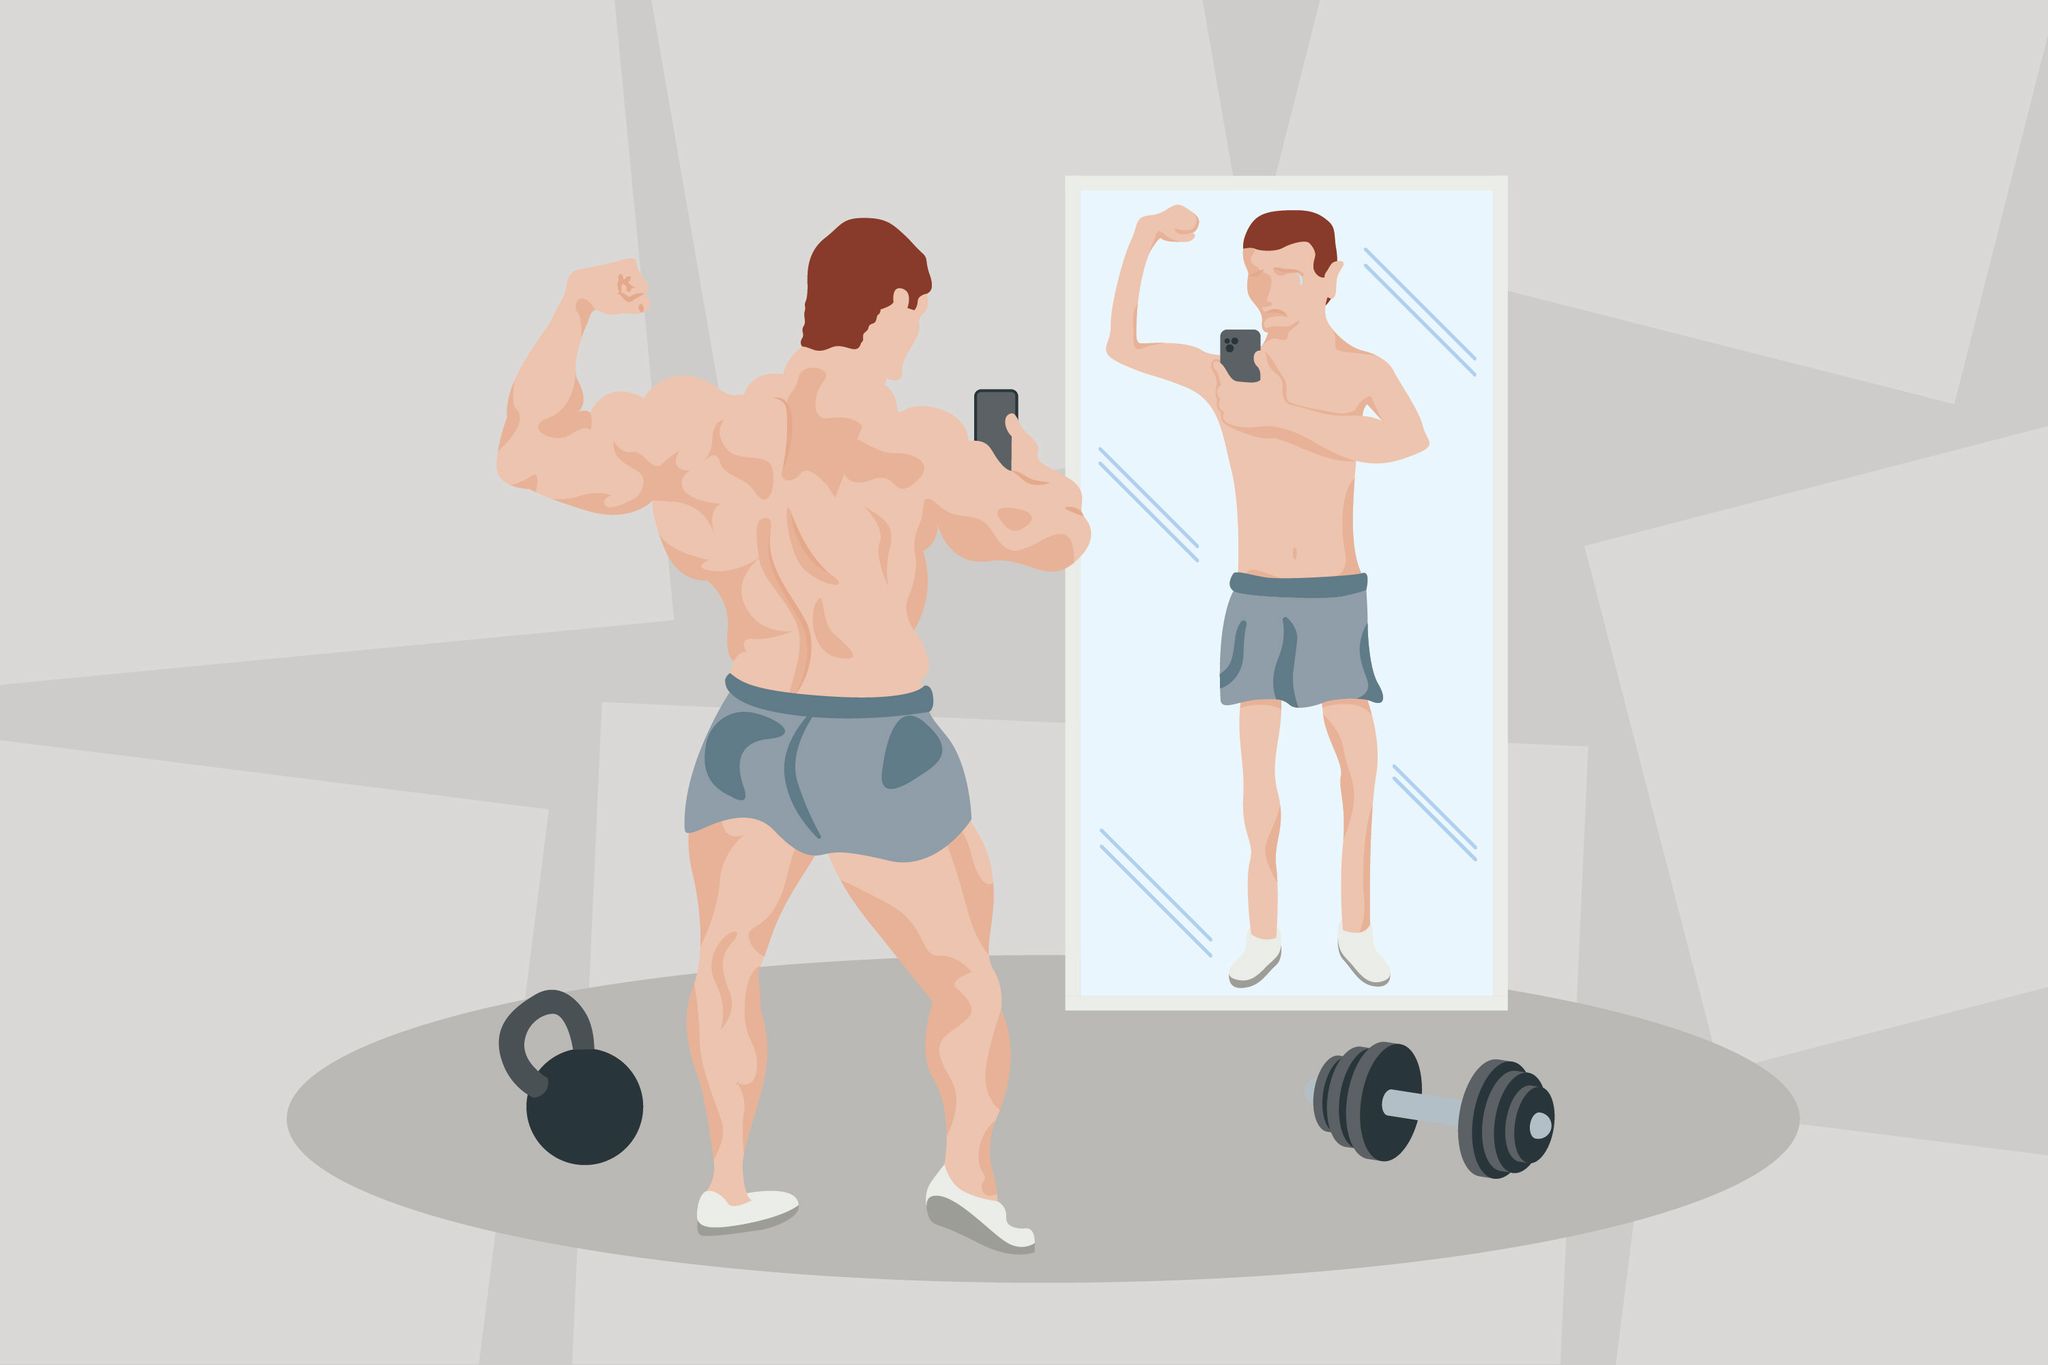 Eine Sportsucht kann sich aus einer Körperschemastörung entwickeln. Dabei nehmen Betroffene ihr Aussehen im Spiegel verzerrt wahr.